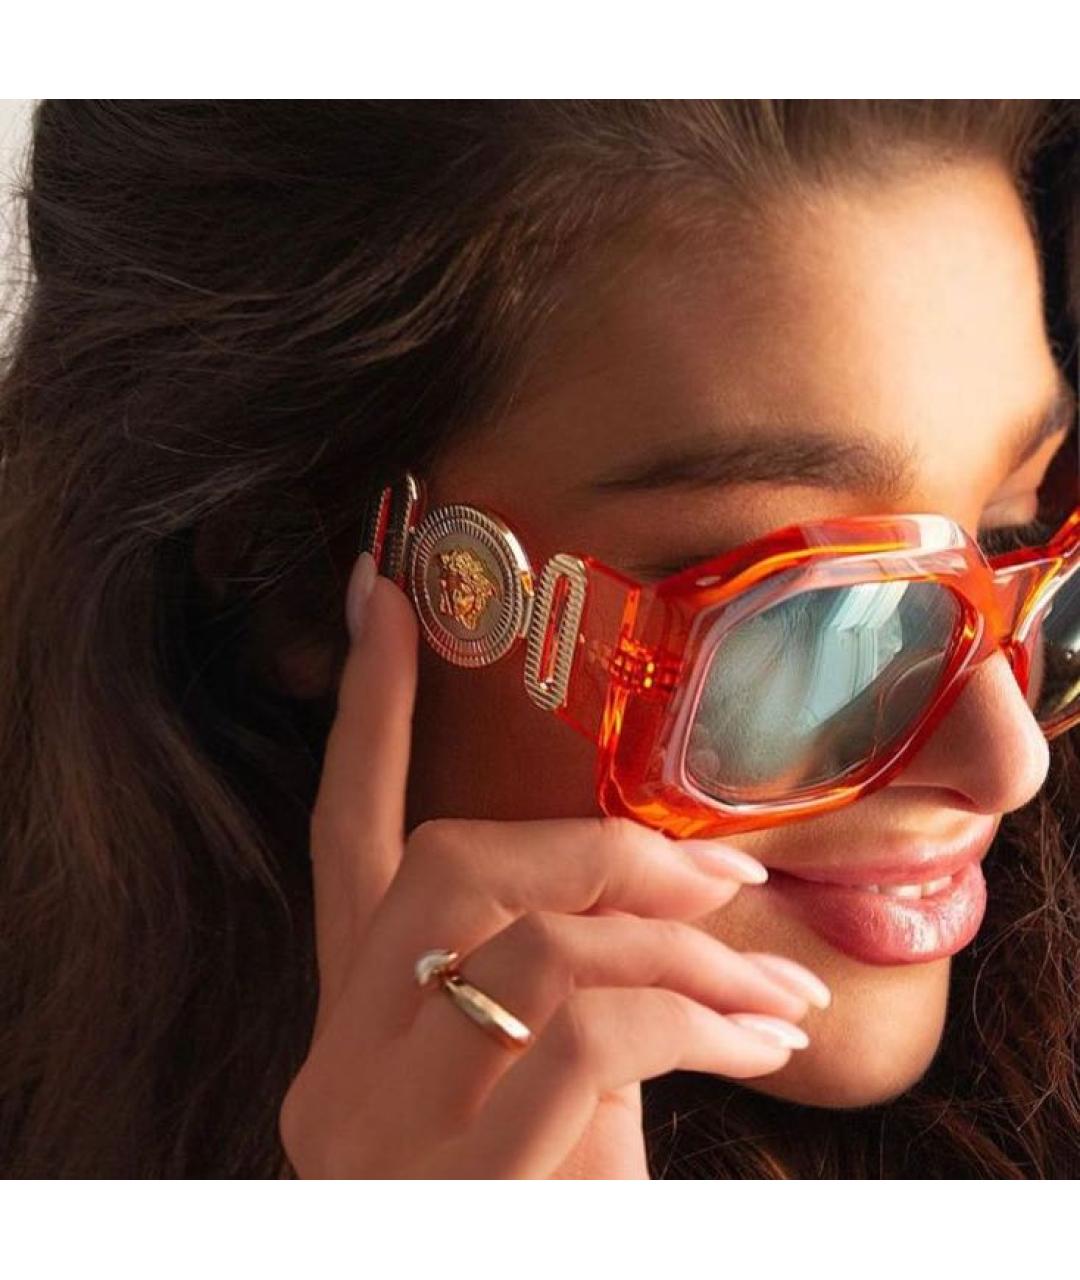 VERSACE Оранжевое пластиковые солнцезащитные очки, фото 5